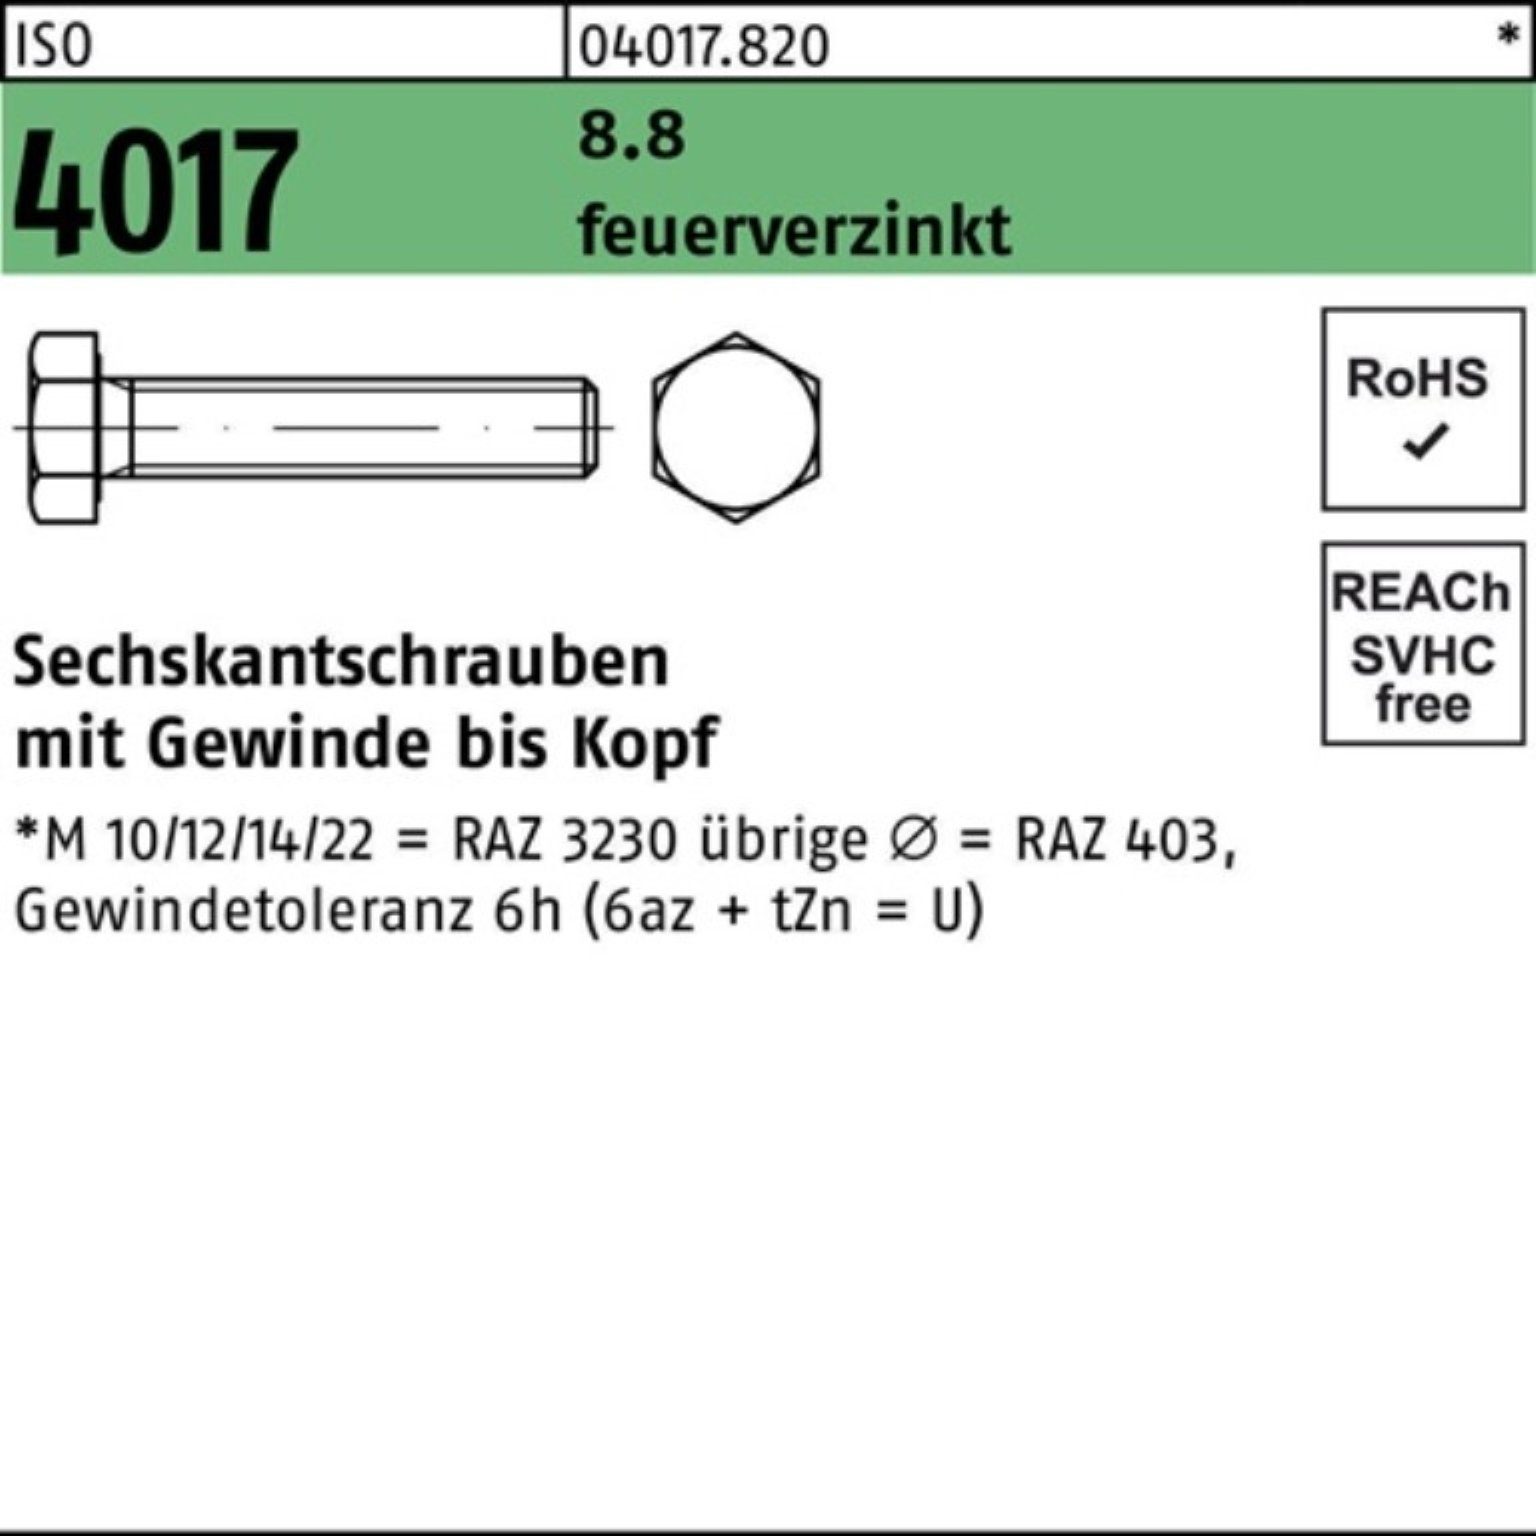 Bufab Sechskantschraube 500er Pack Sechskantschraube feuerverz. M6x VG 16 St 4017 8.8 ISO 500